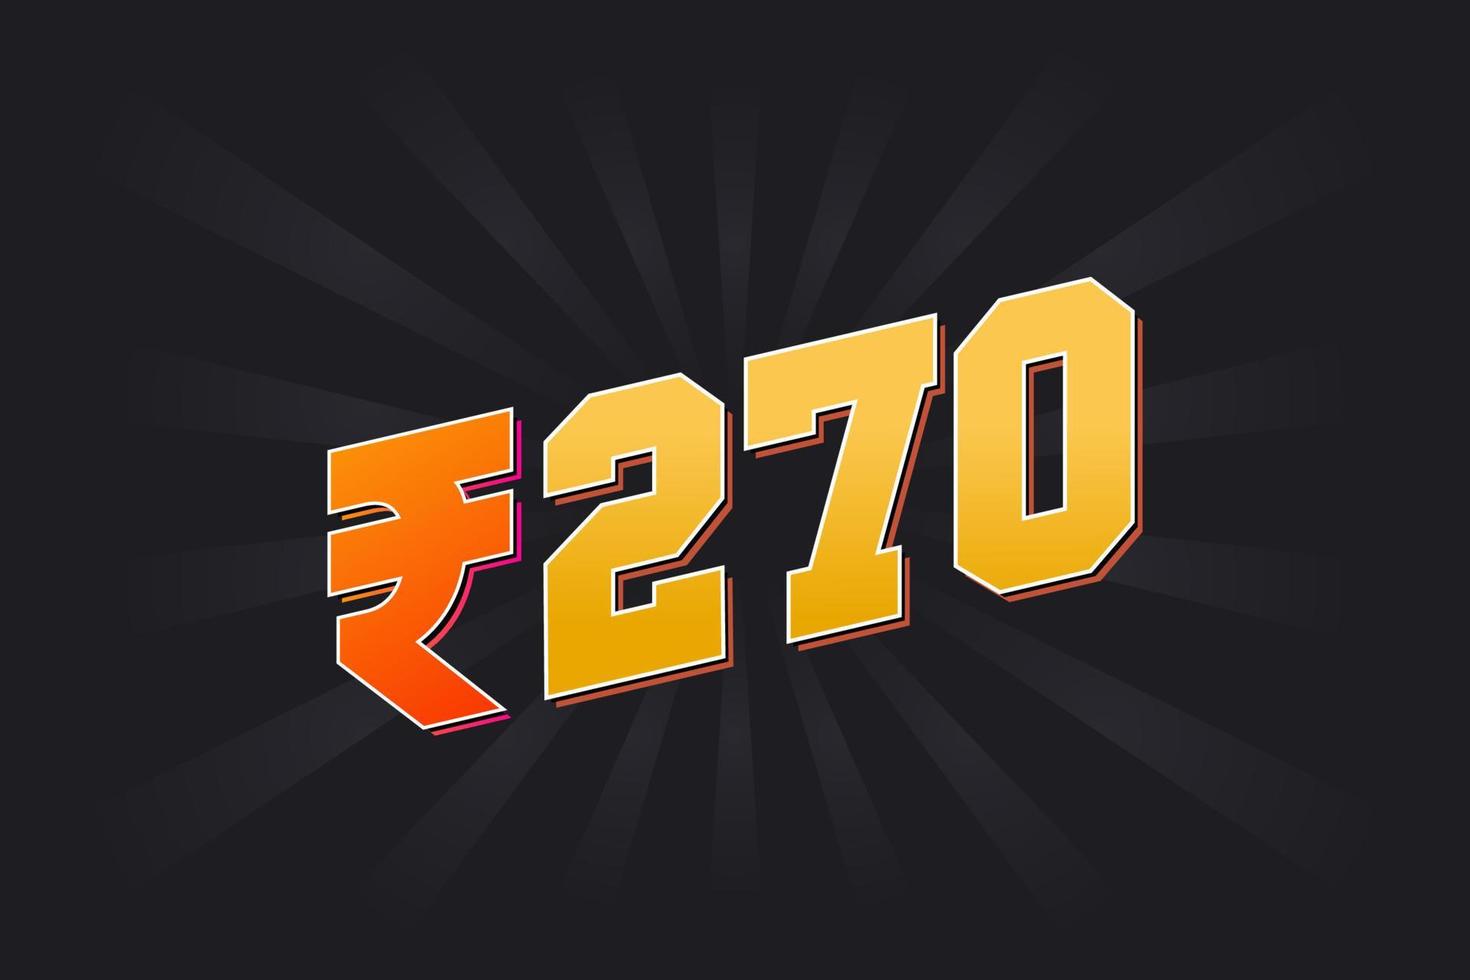 Image vectorielle de 270 roupies indiennes. 270 roupie symbole texte en gras illustration vectorielle vecteur